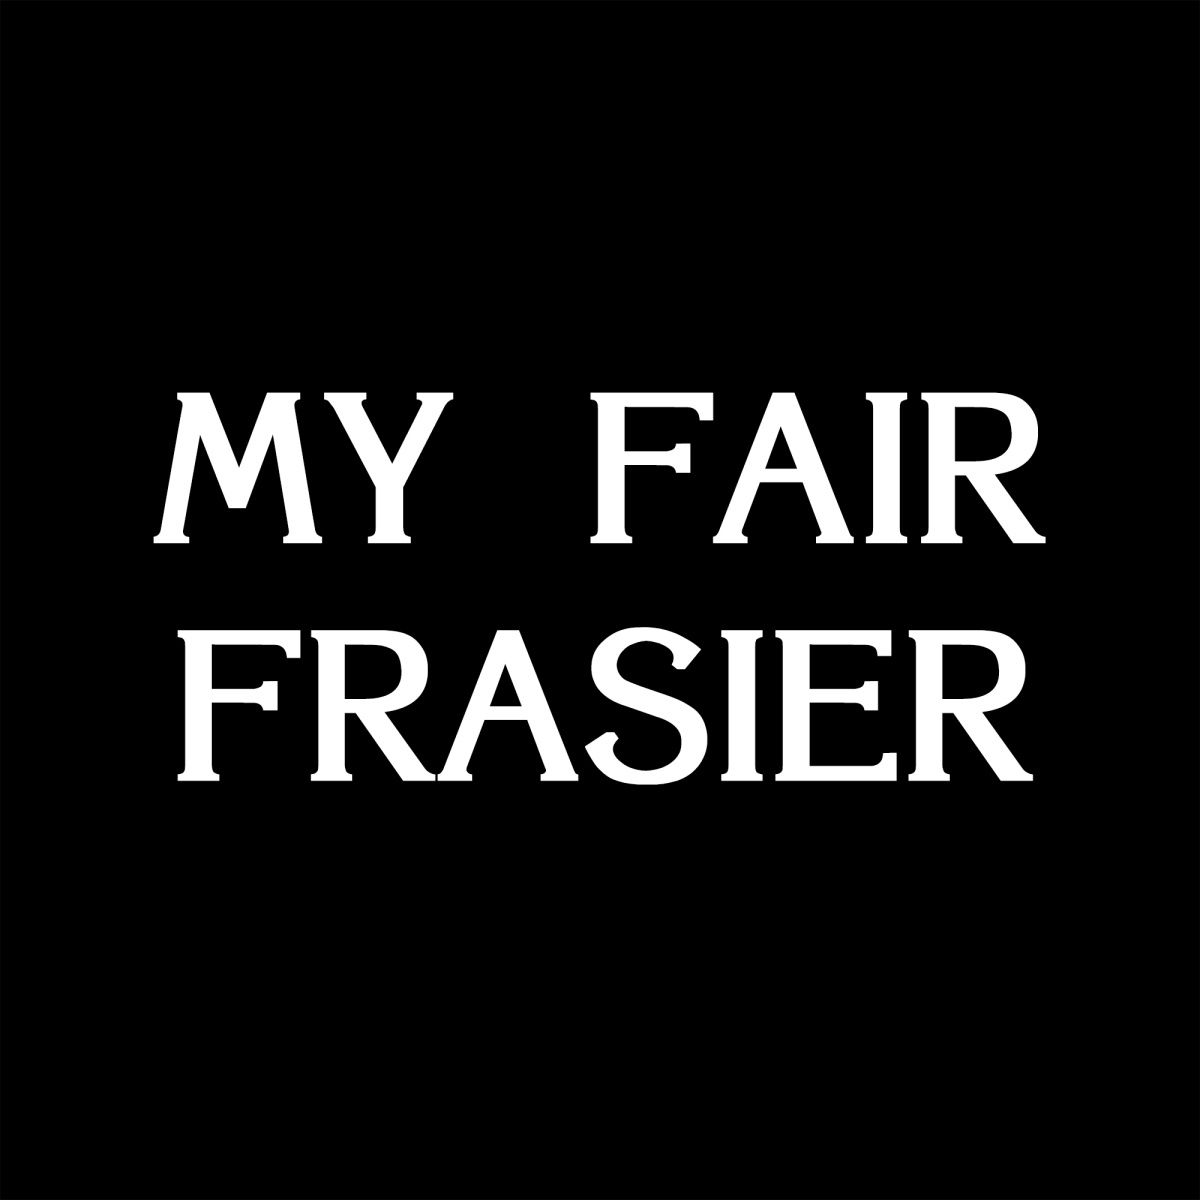 My Fair Frasier